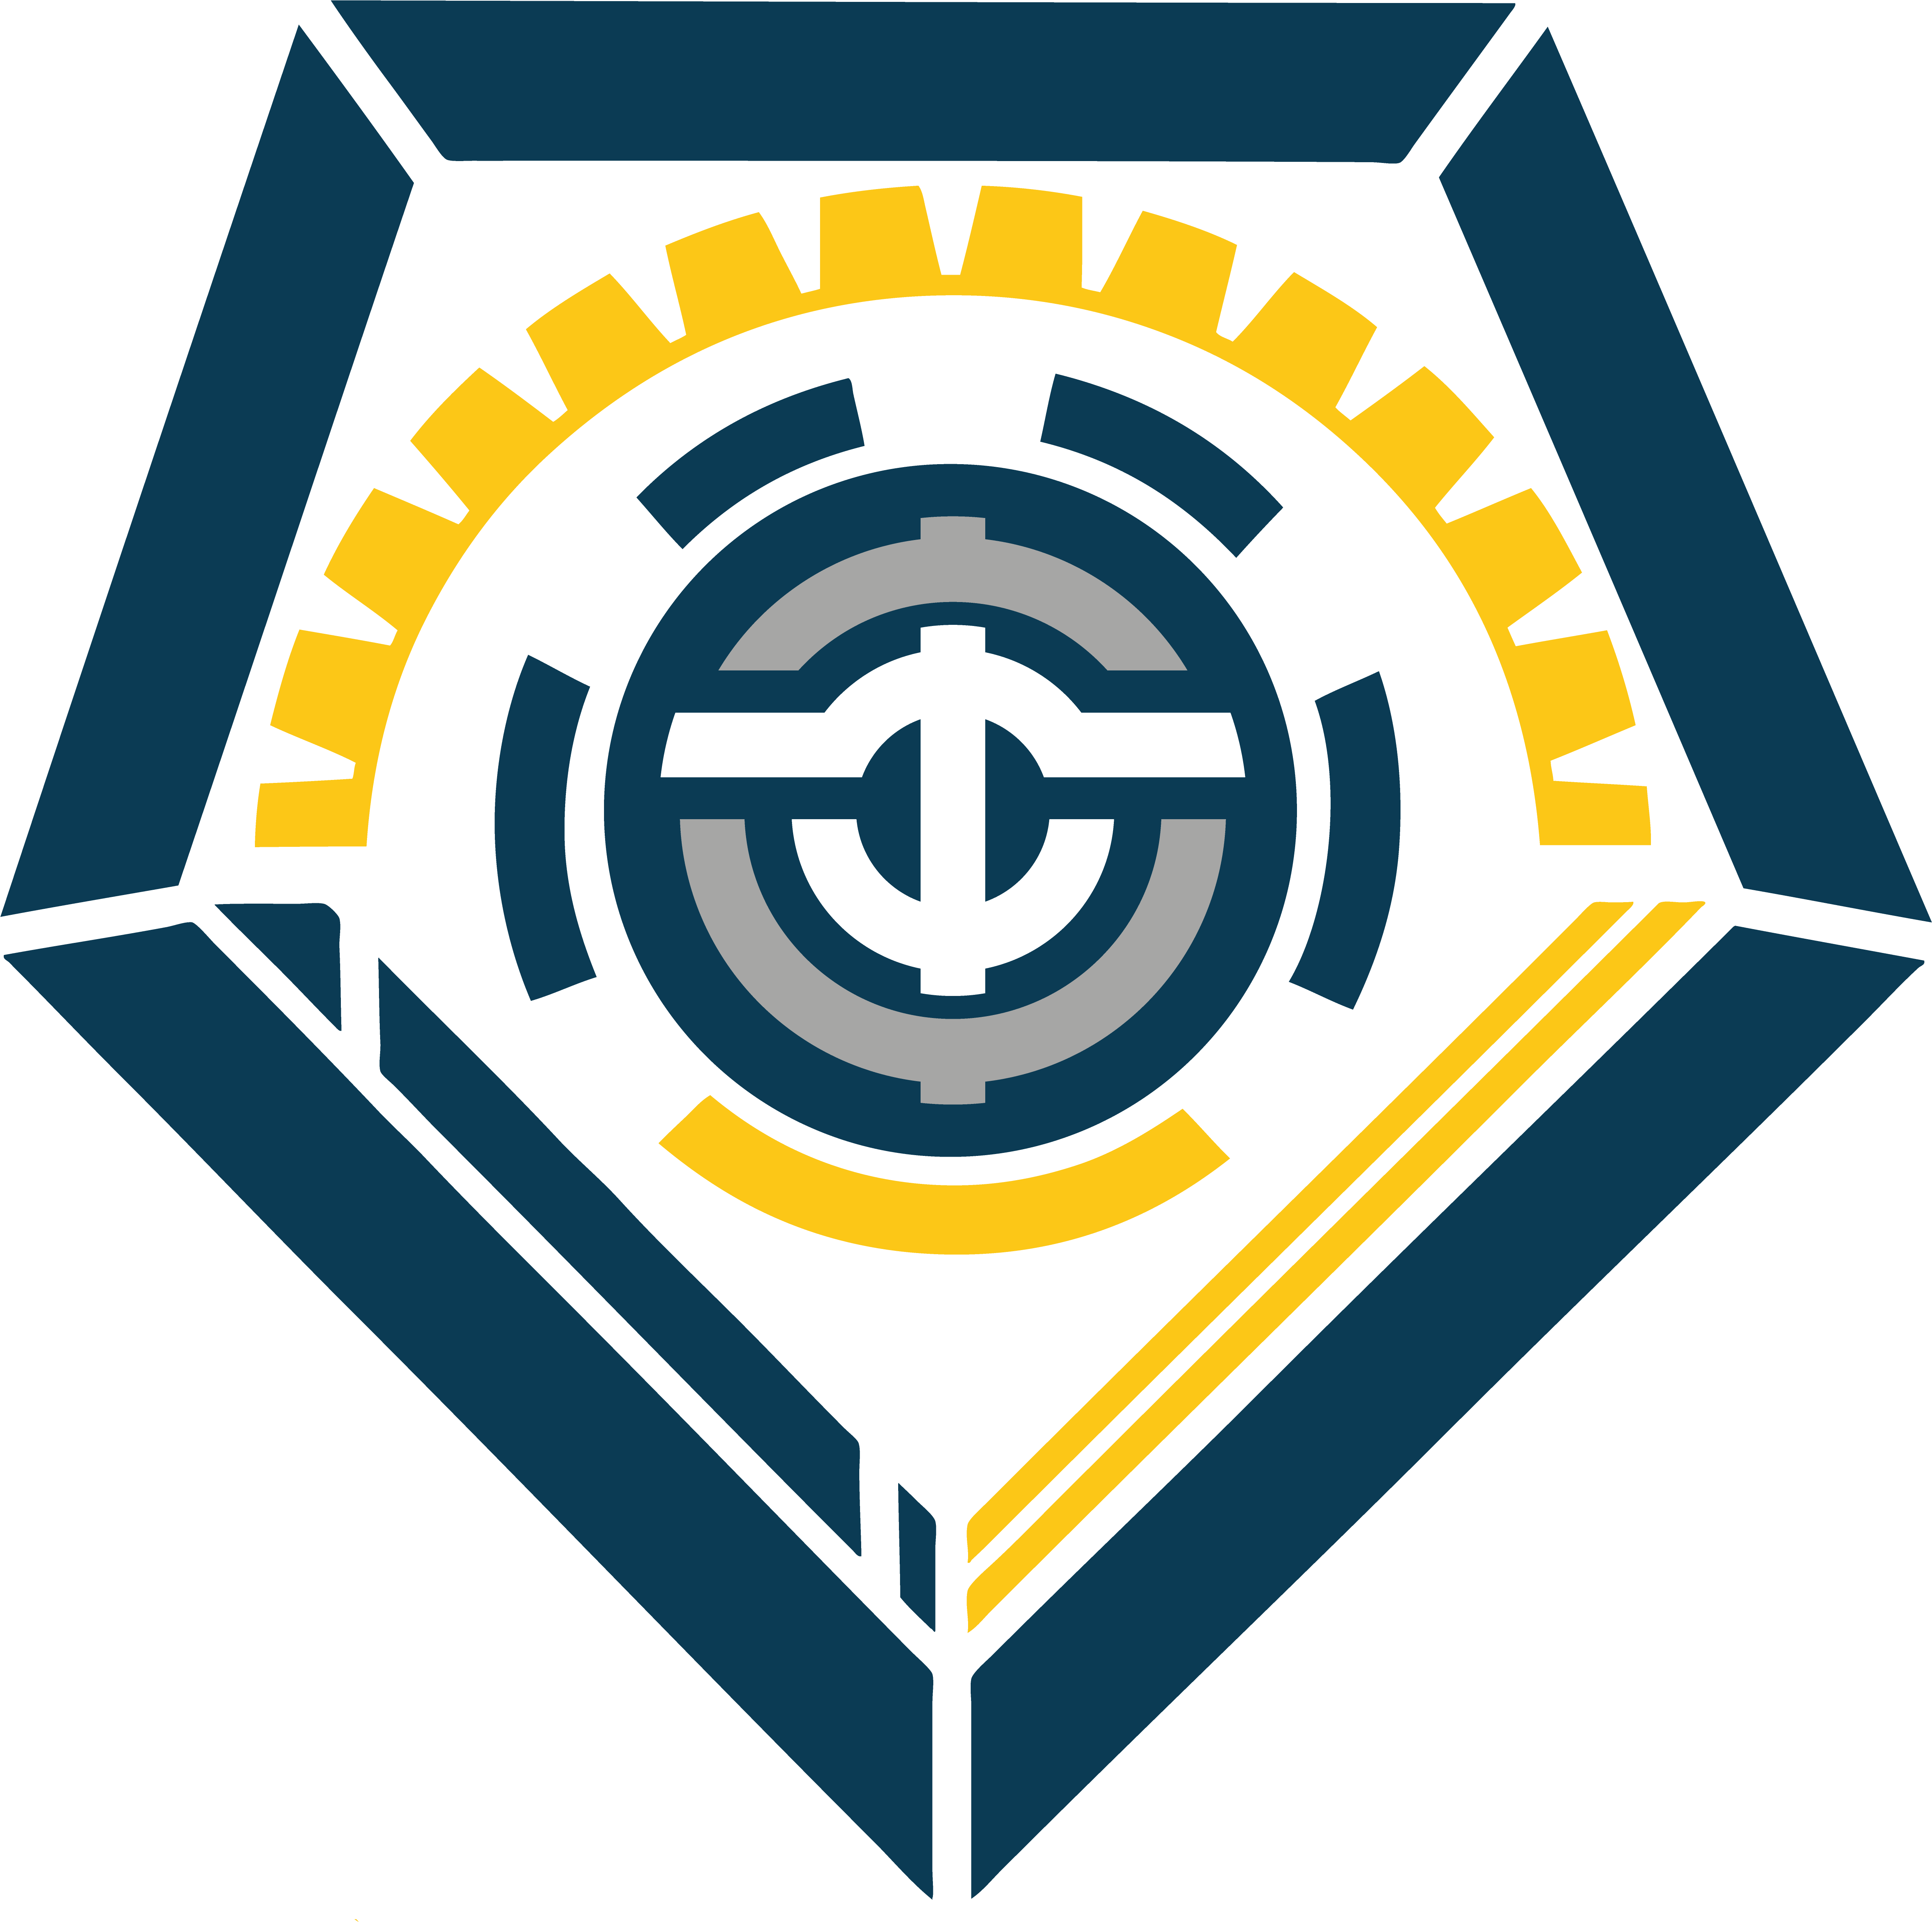 Logo-13 - Internet Legends (5906x5906), Png Download